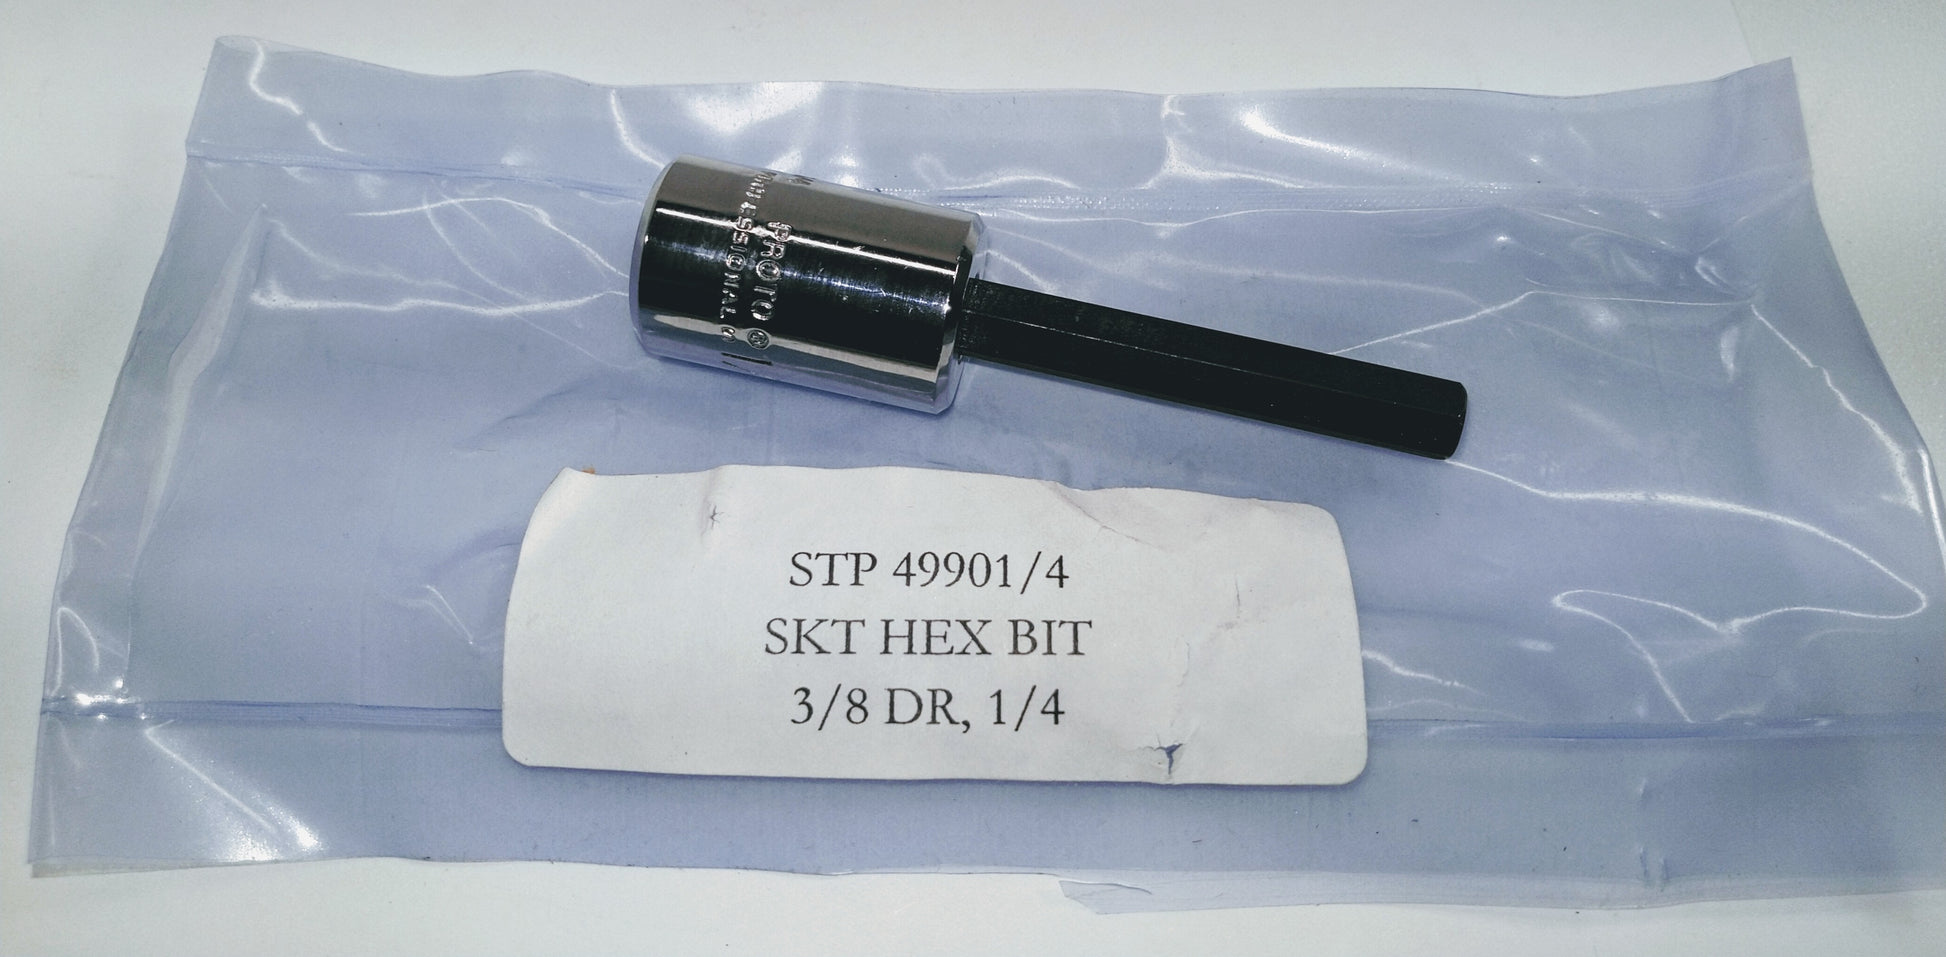 SKT HEX BIT 3/8 DR 1/4- 5120-00-596-8508, J-35172, STP 49901/4